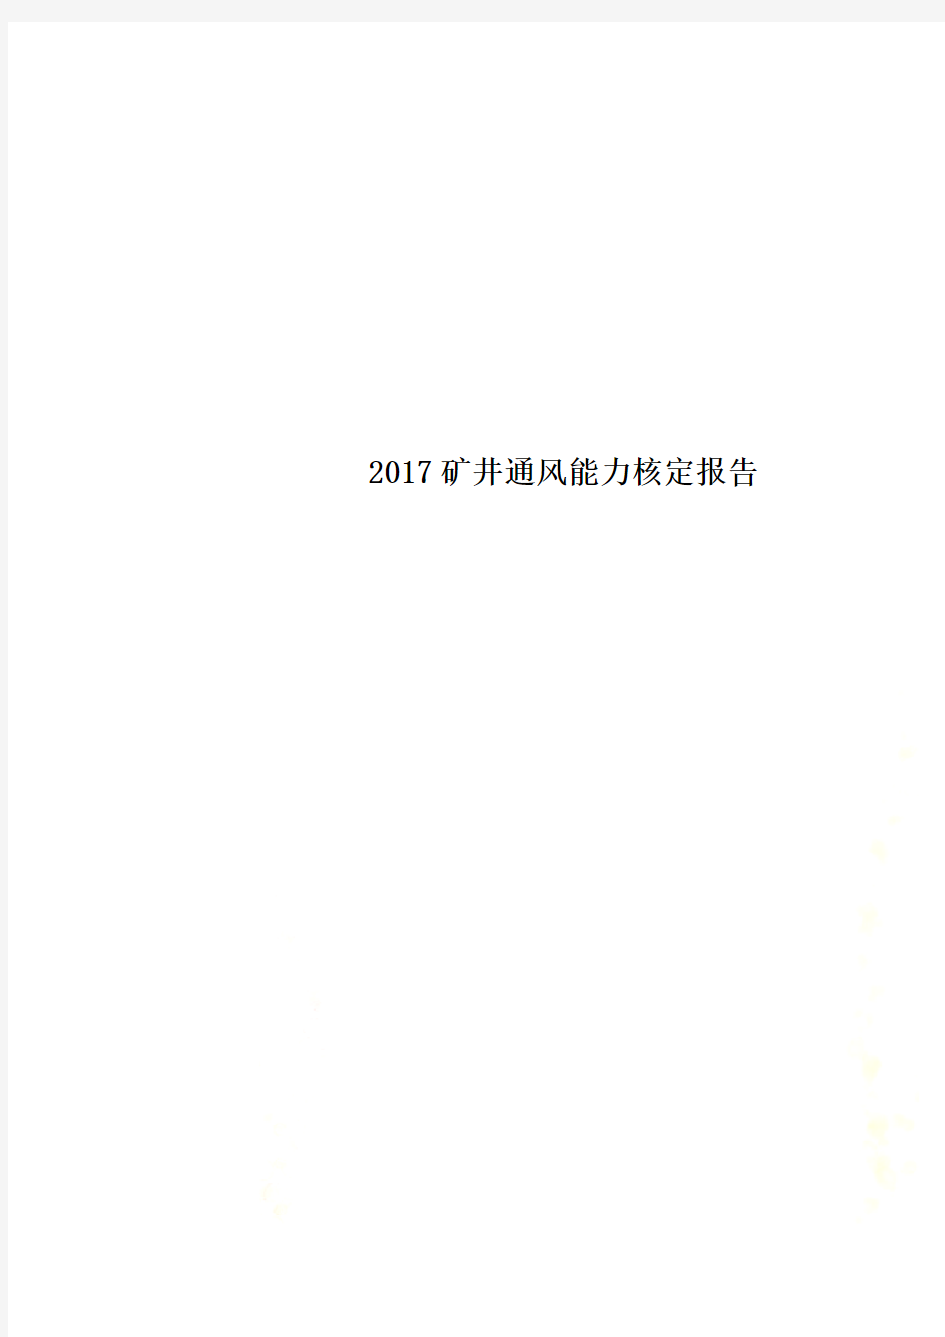 2017矿井通风能力核定报告